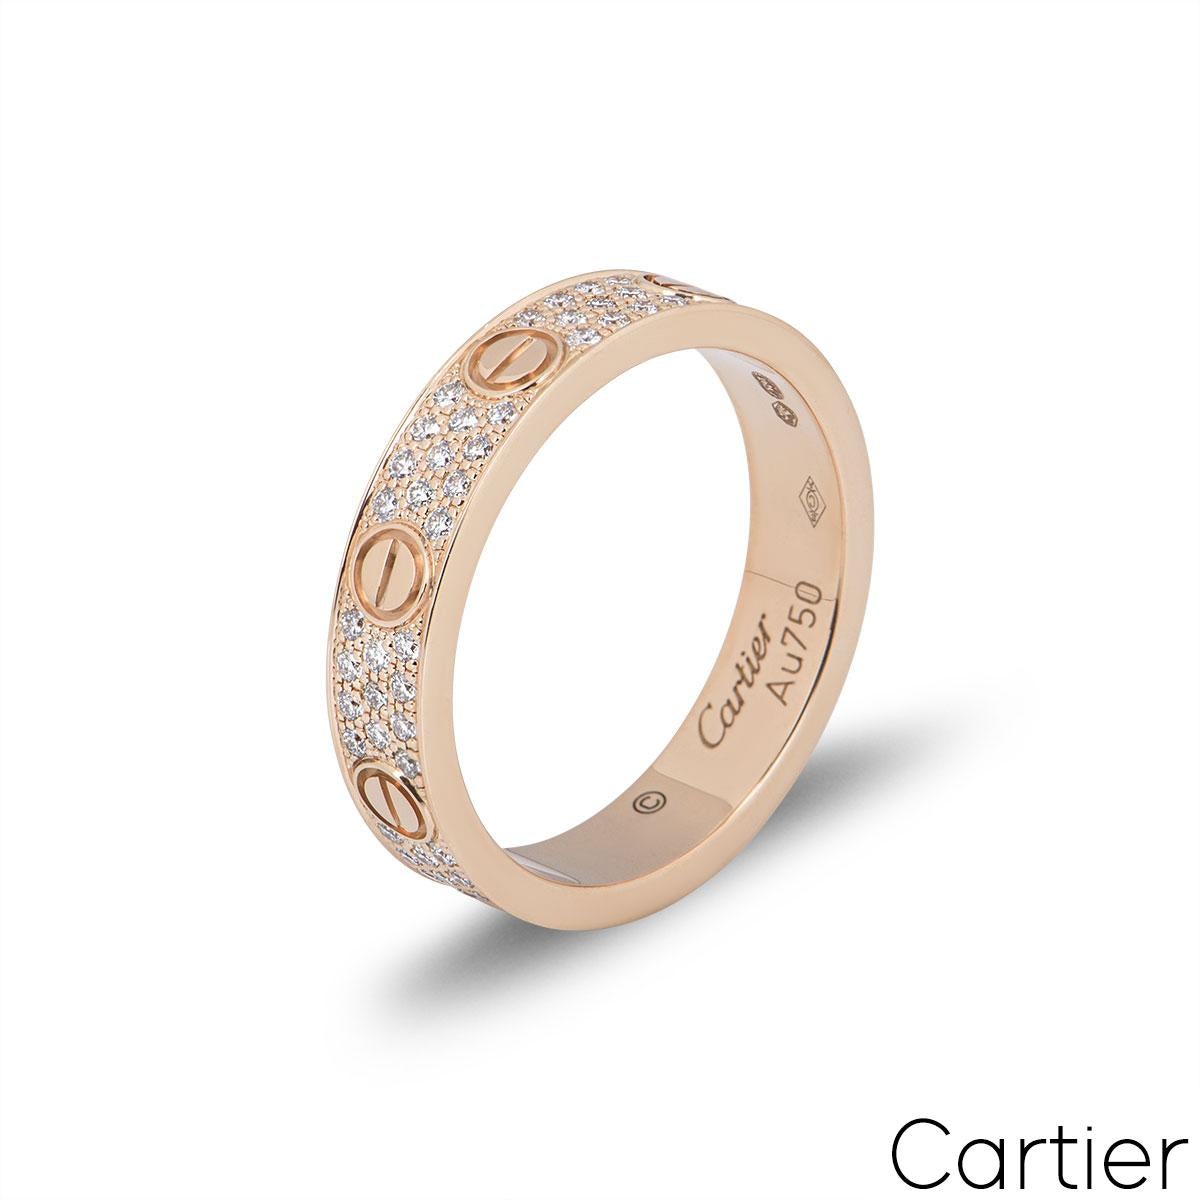 Bague en or rose 18 carats pavée de diamants de Cartier, de la collection Love. La bague comprend les motifs emblématiques de la vis sur les bords extérieurs, avec 88 diamants ronds de taille brillant d'une valeur totale de 0,31 ct sertis entre